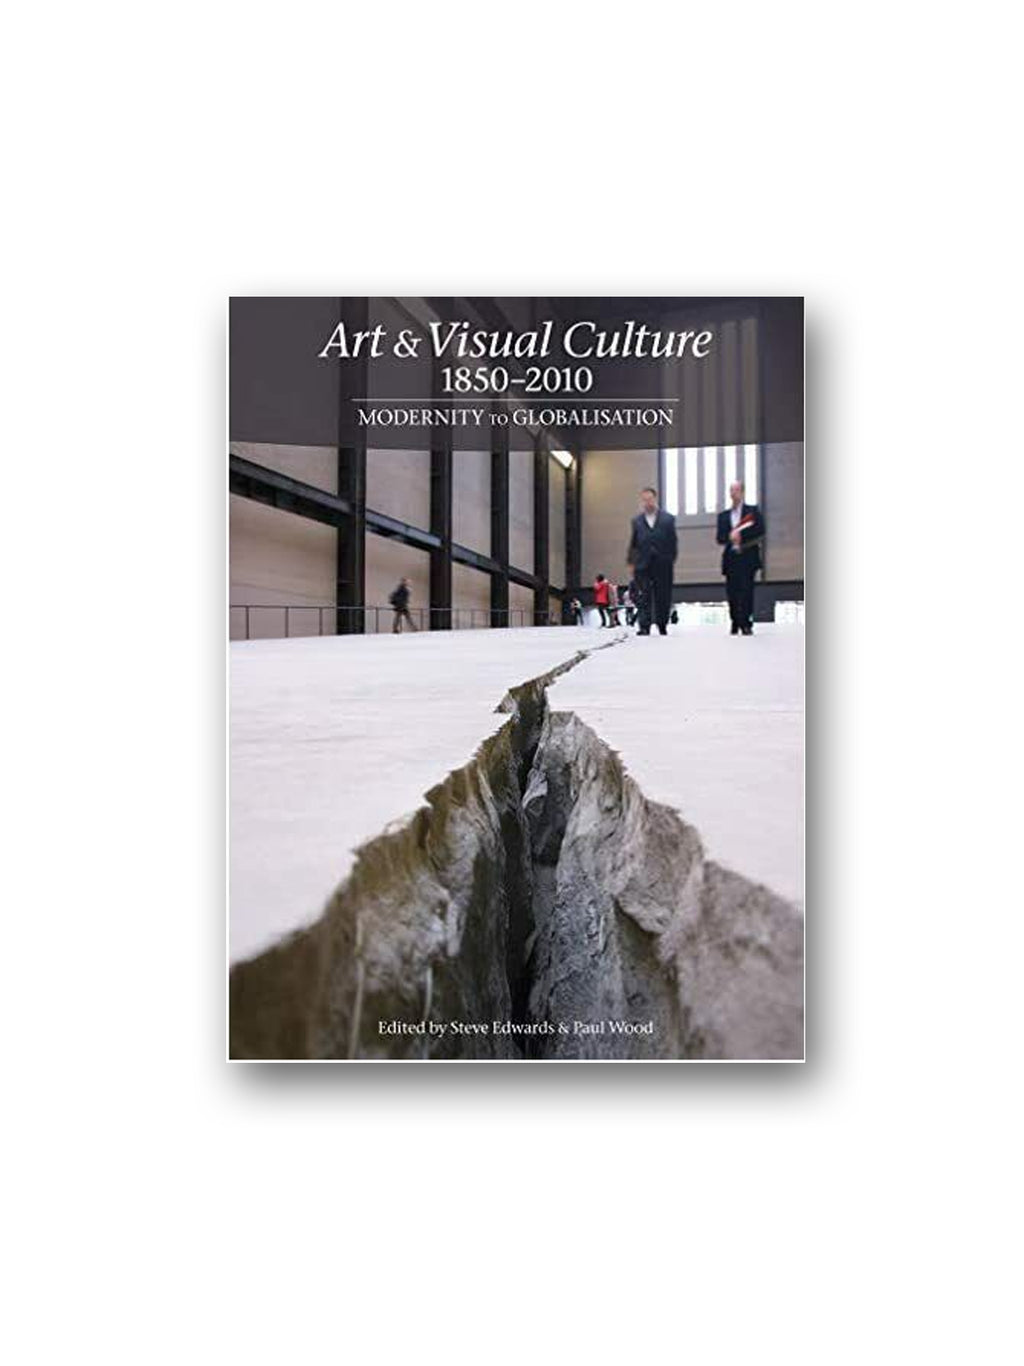 Art & Visual Culture 1850-2010